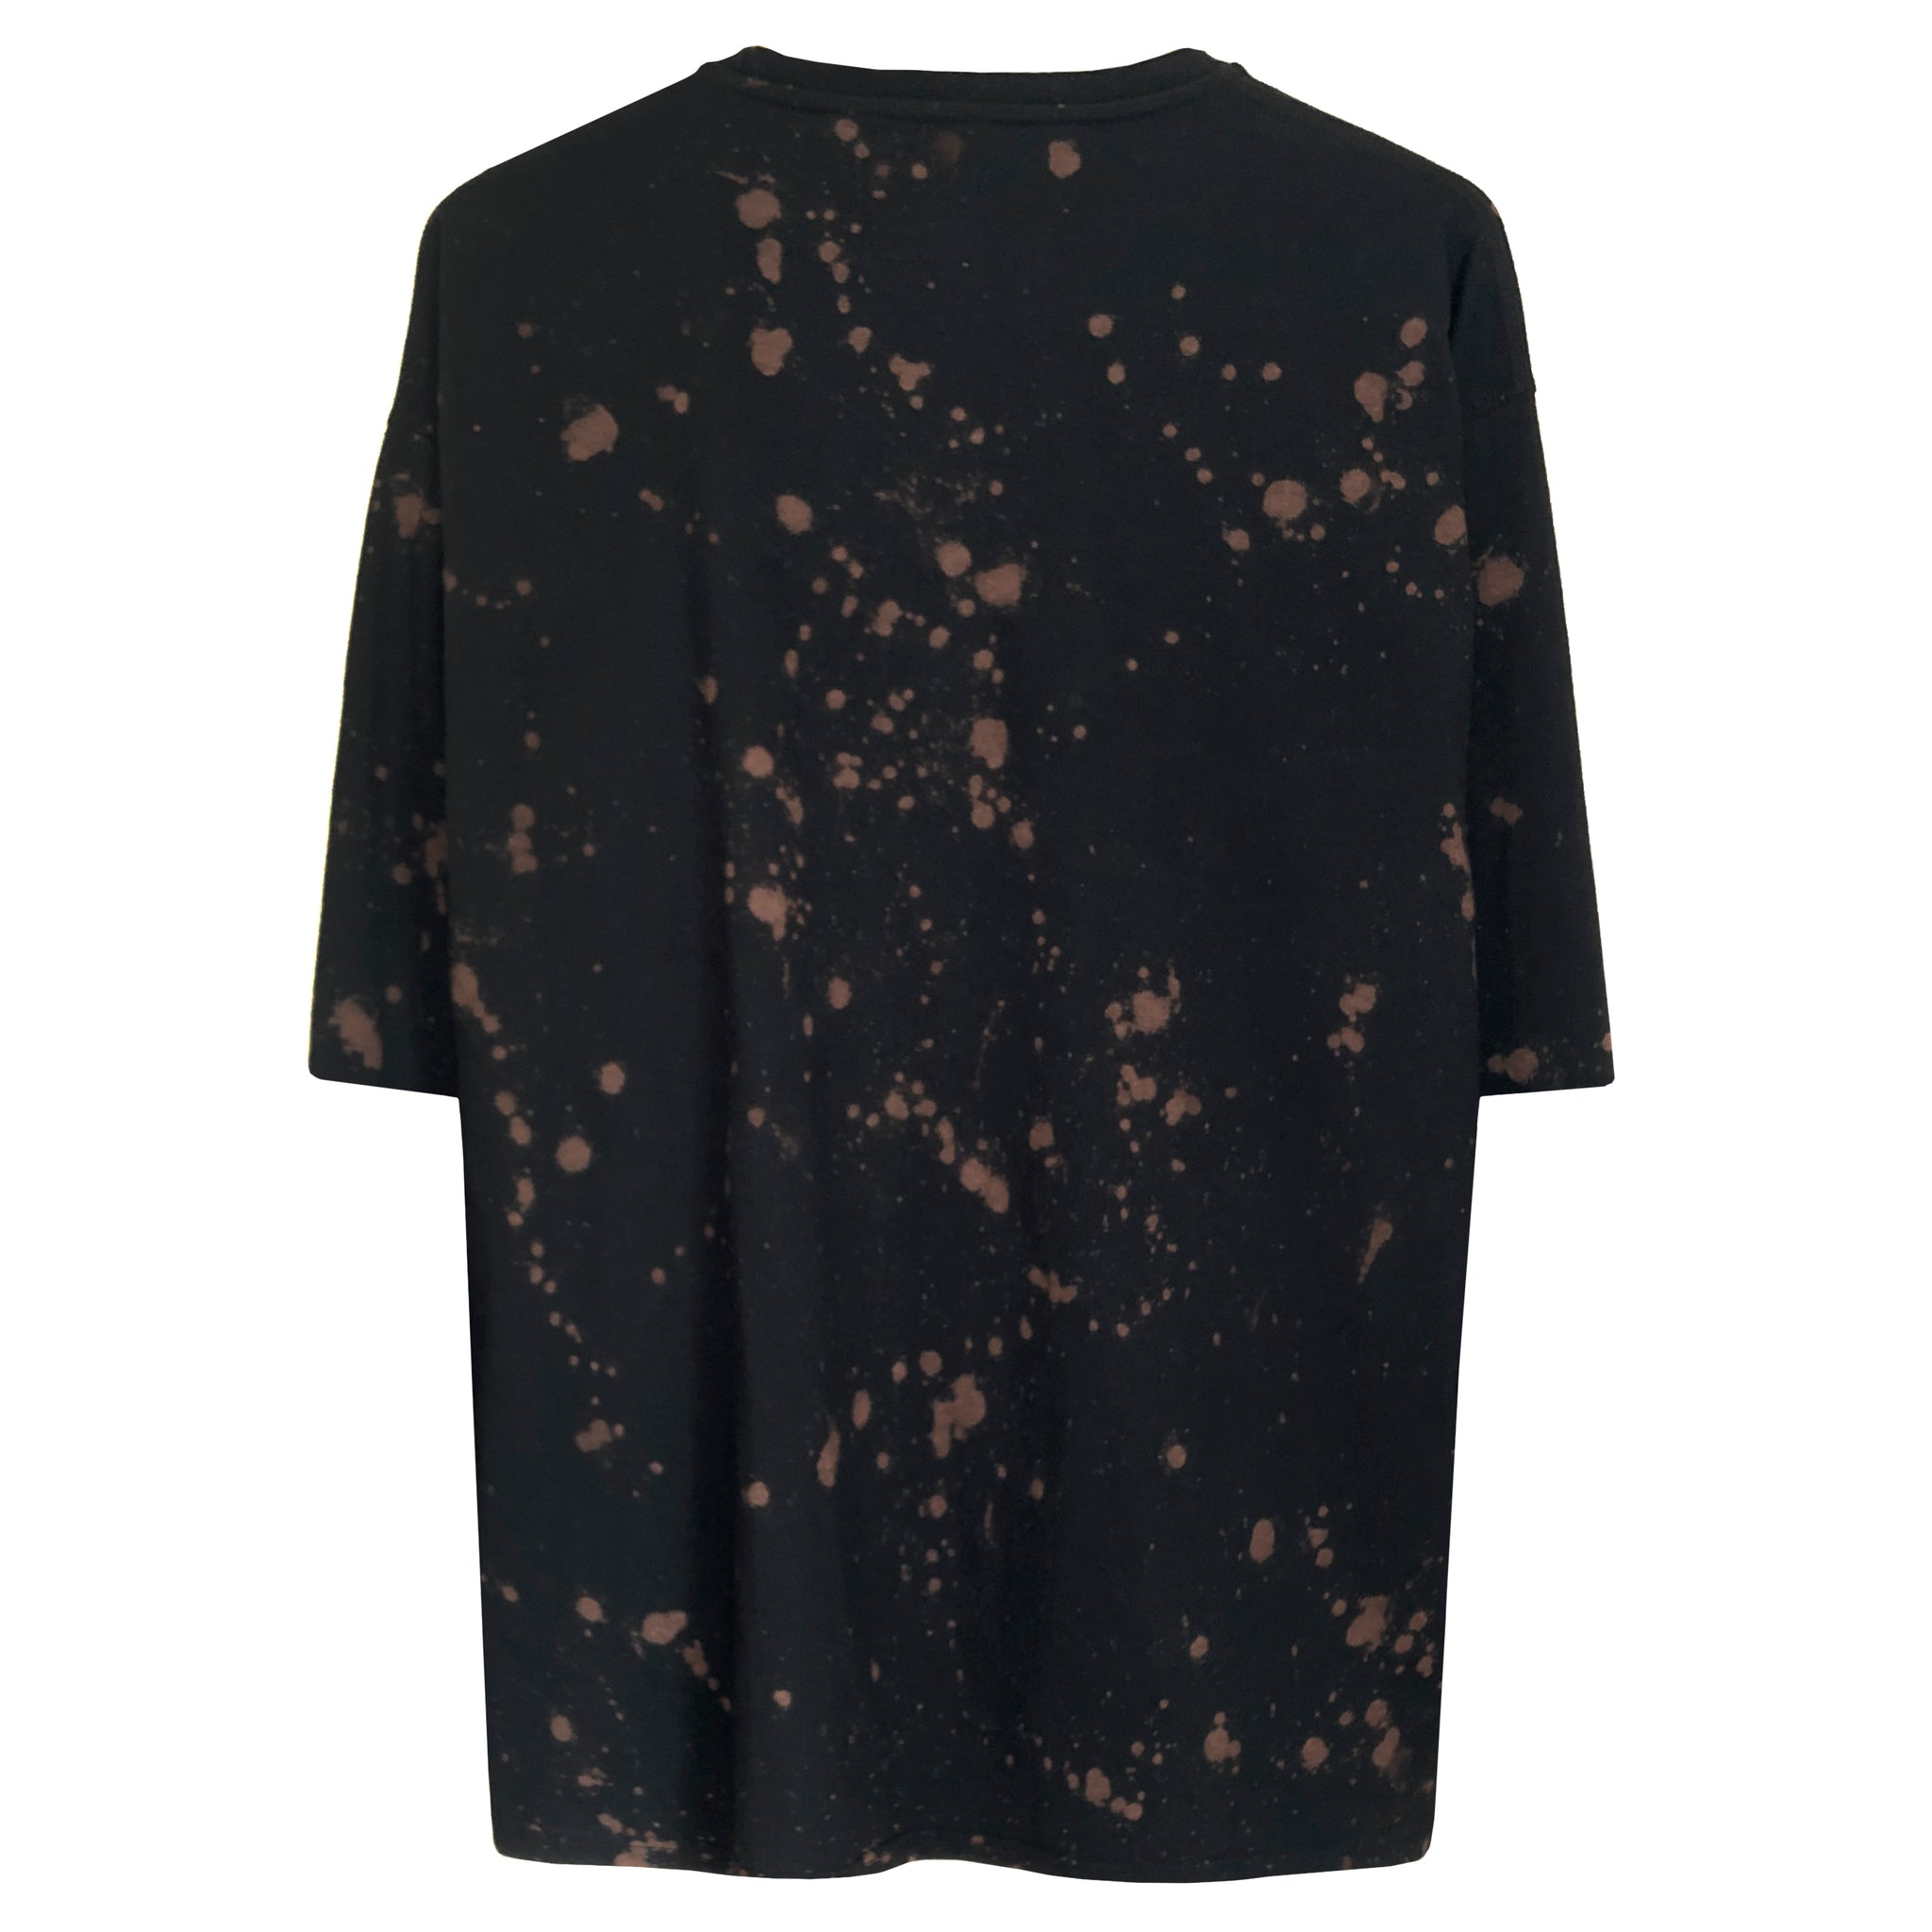 Splatter T-shirt : Black